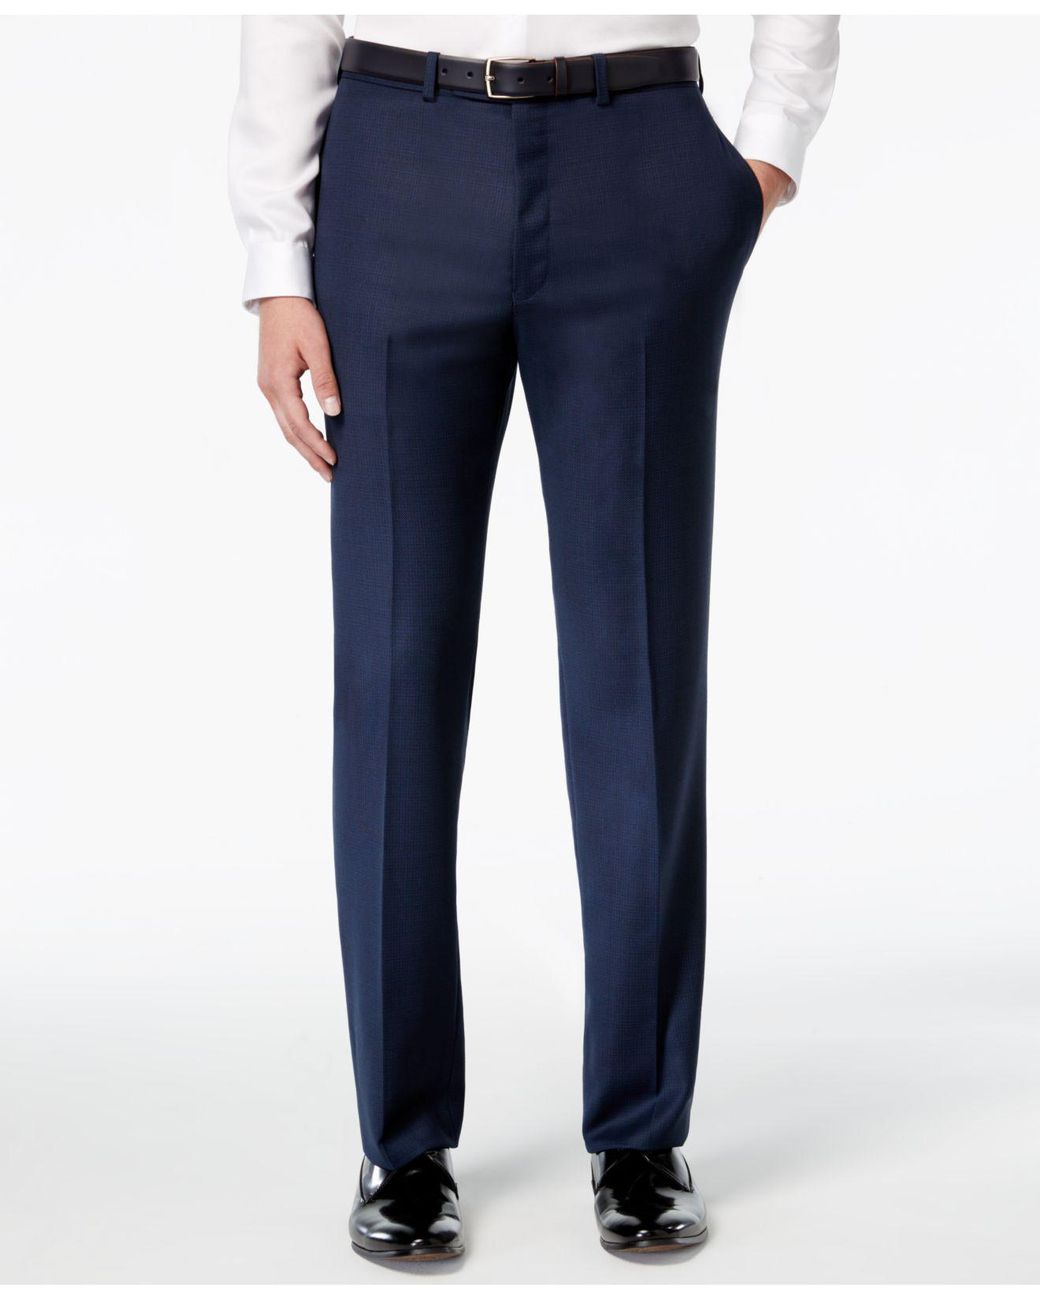 Calvin Klein X-fit Blue/charcoal Birdseye Slim Fit Suit for Men | Lyst